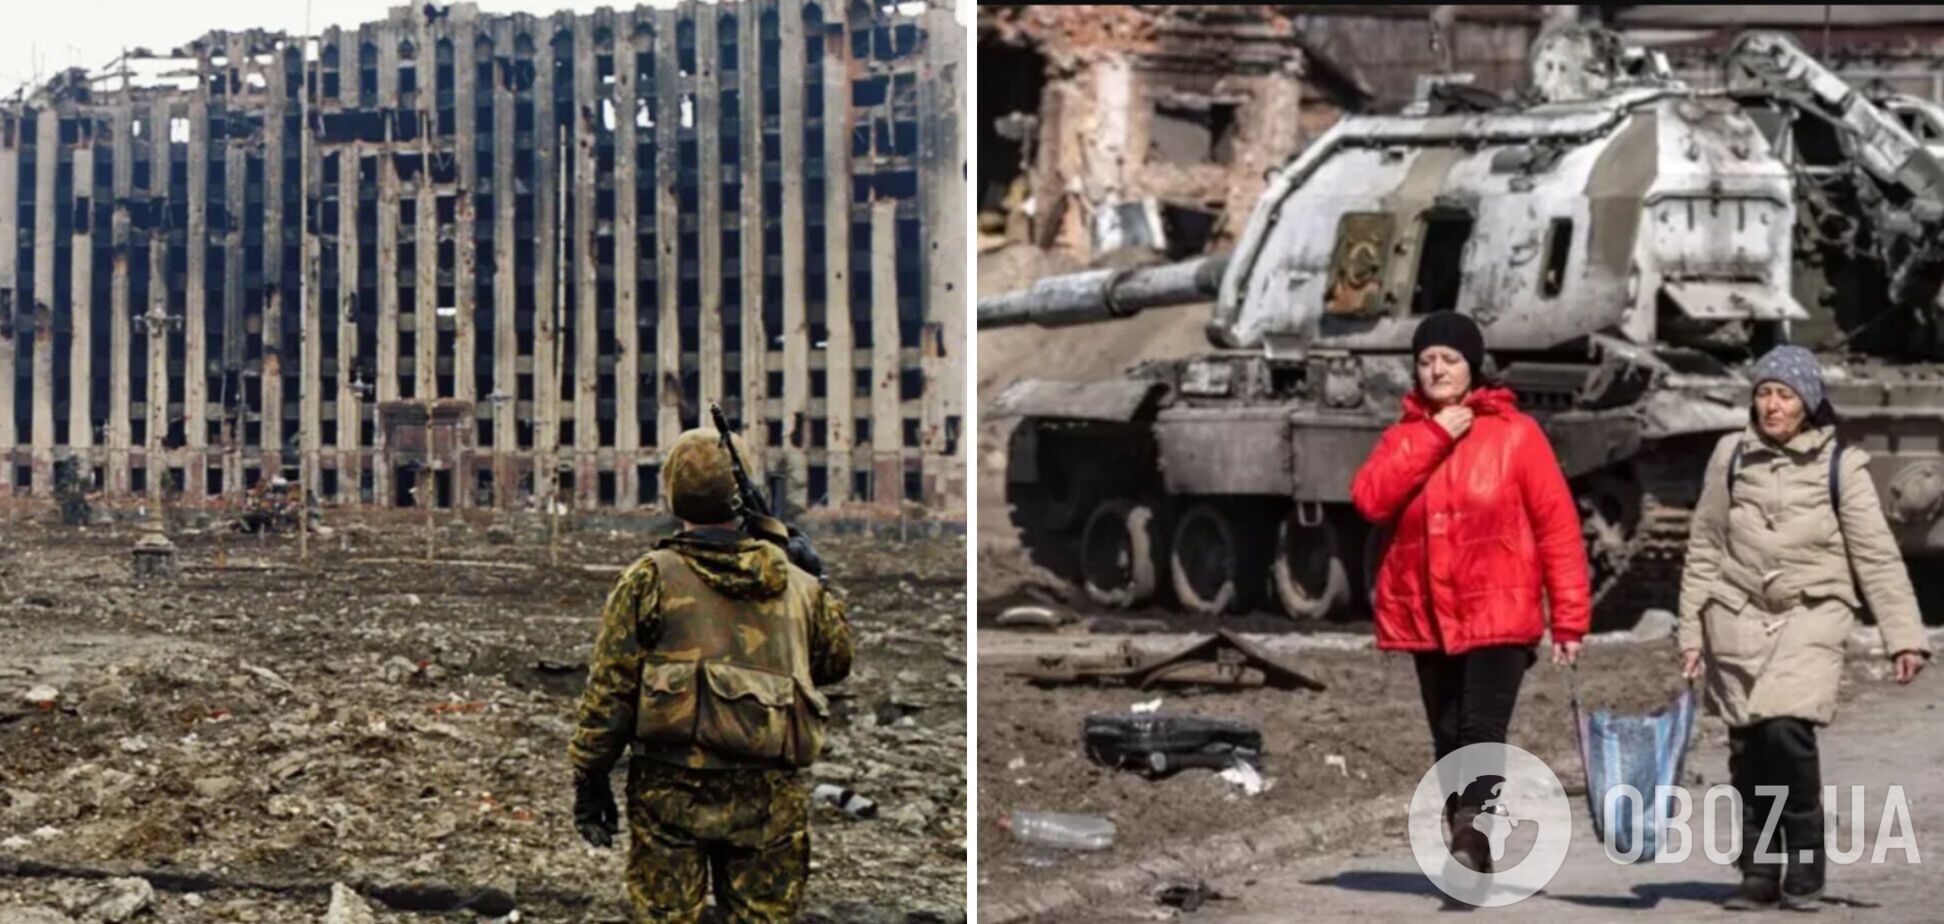 'Країна мертвих душ': Росії пригадали звірства у Чеченській війні. Відео 18+